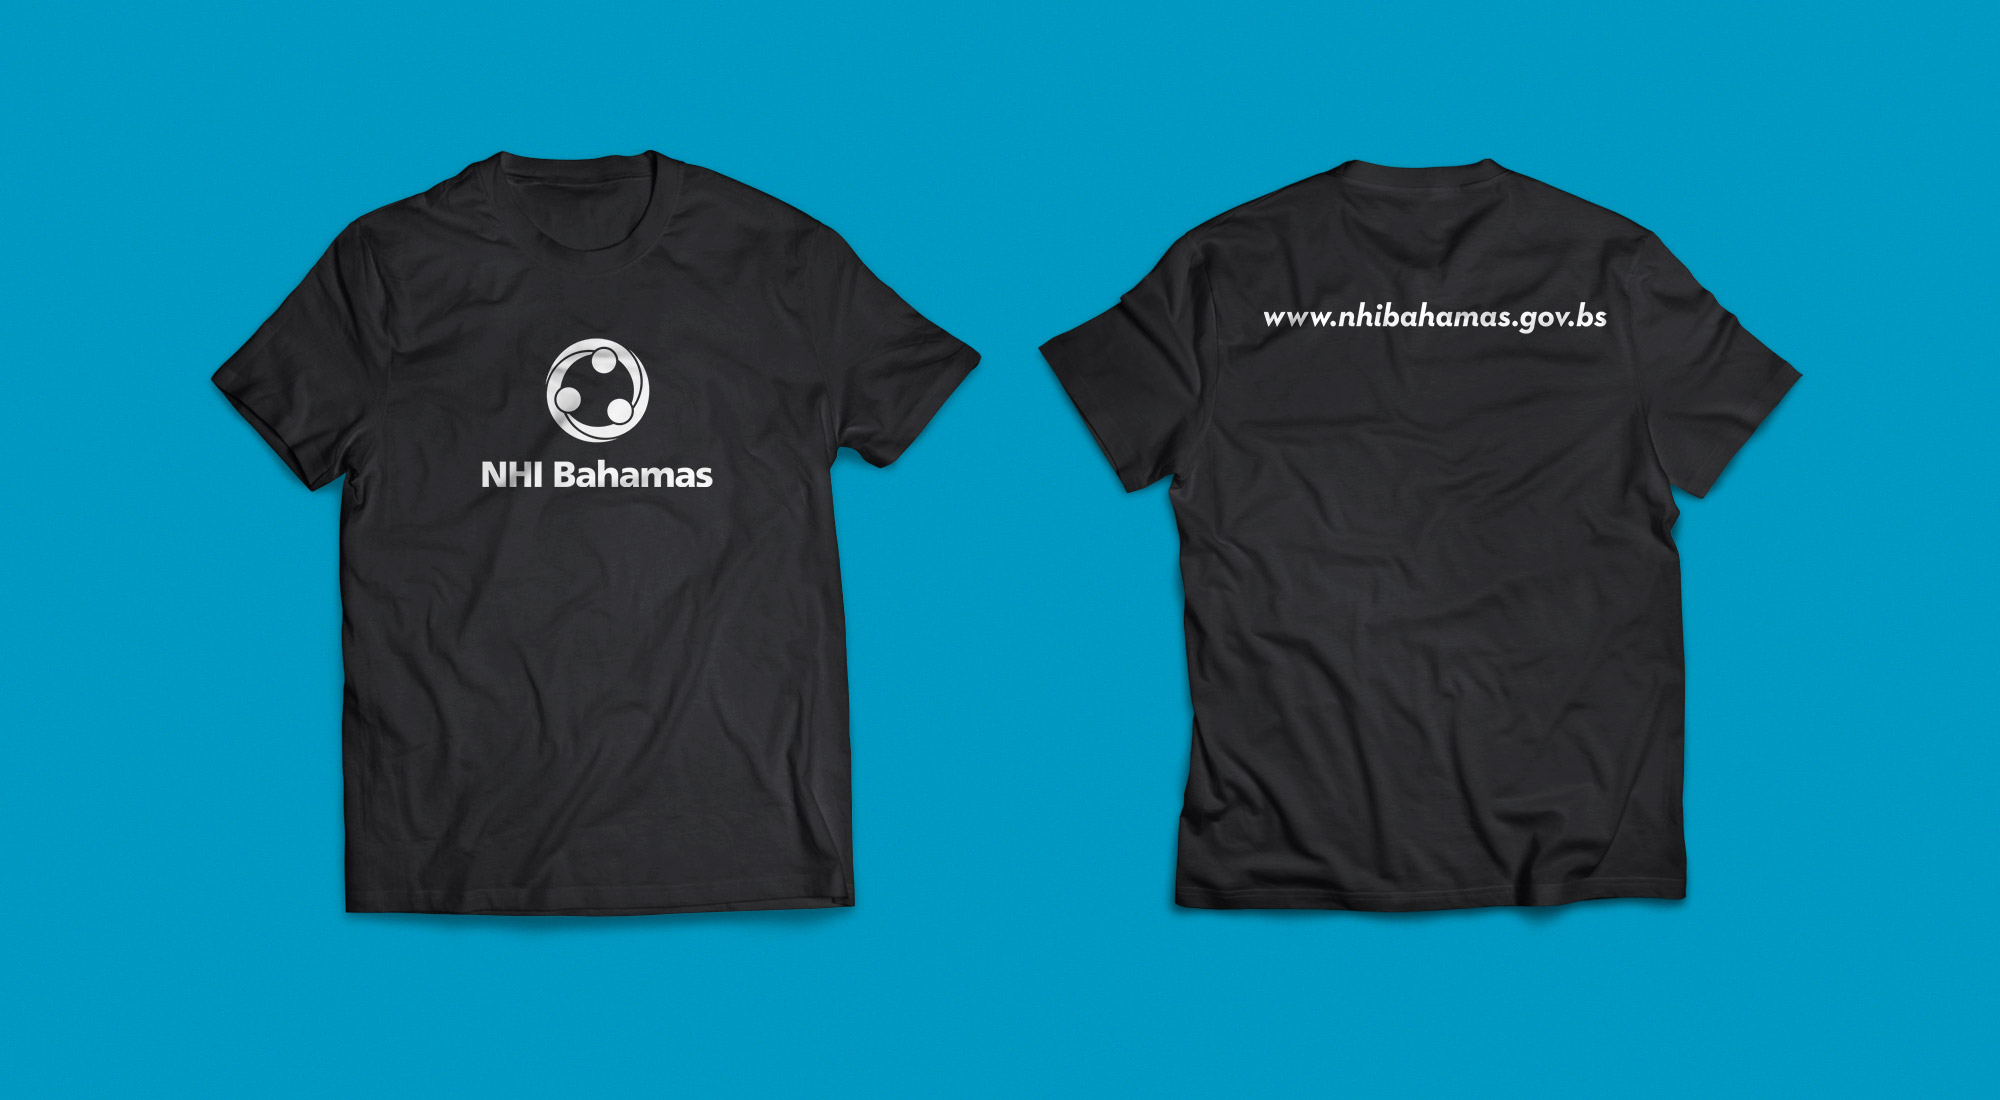 NHI Bahamas Logo on Black T-Shirts